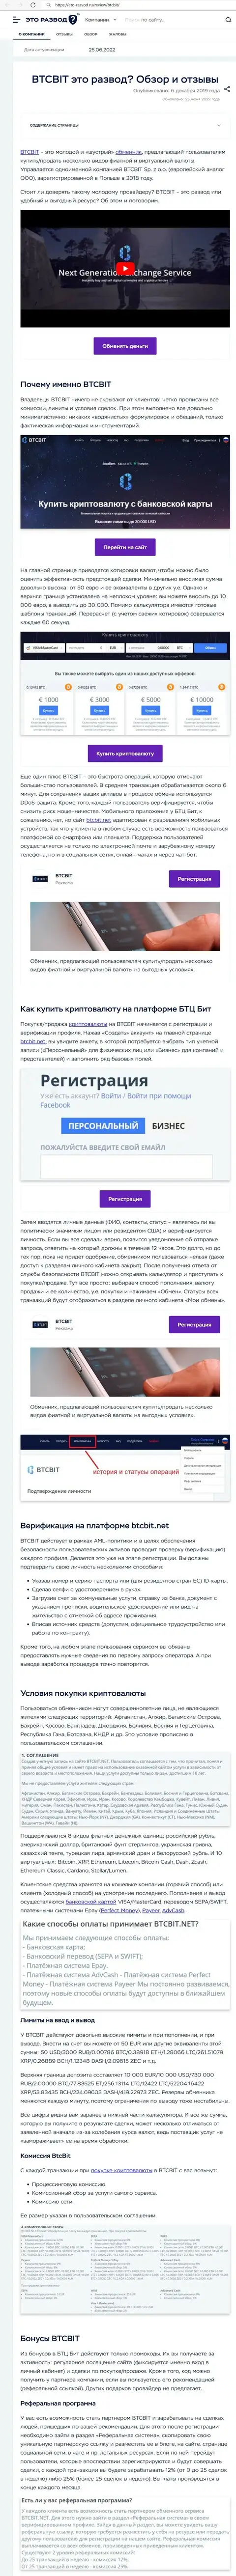 Обзор и условия работы online обменника BTCBit в обзорной статье на интернет-сервисе eto razvod ru